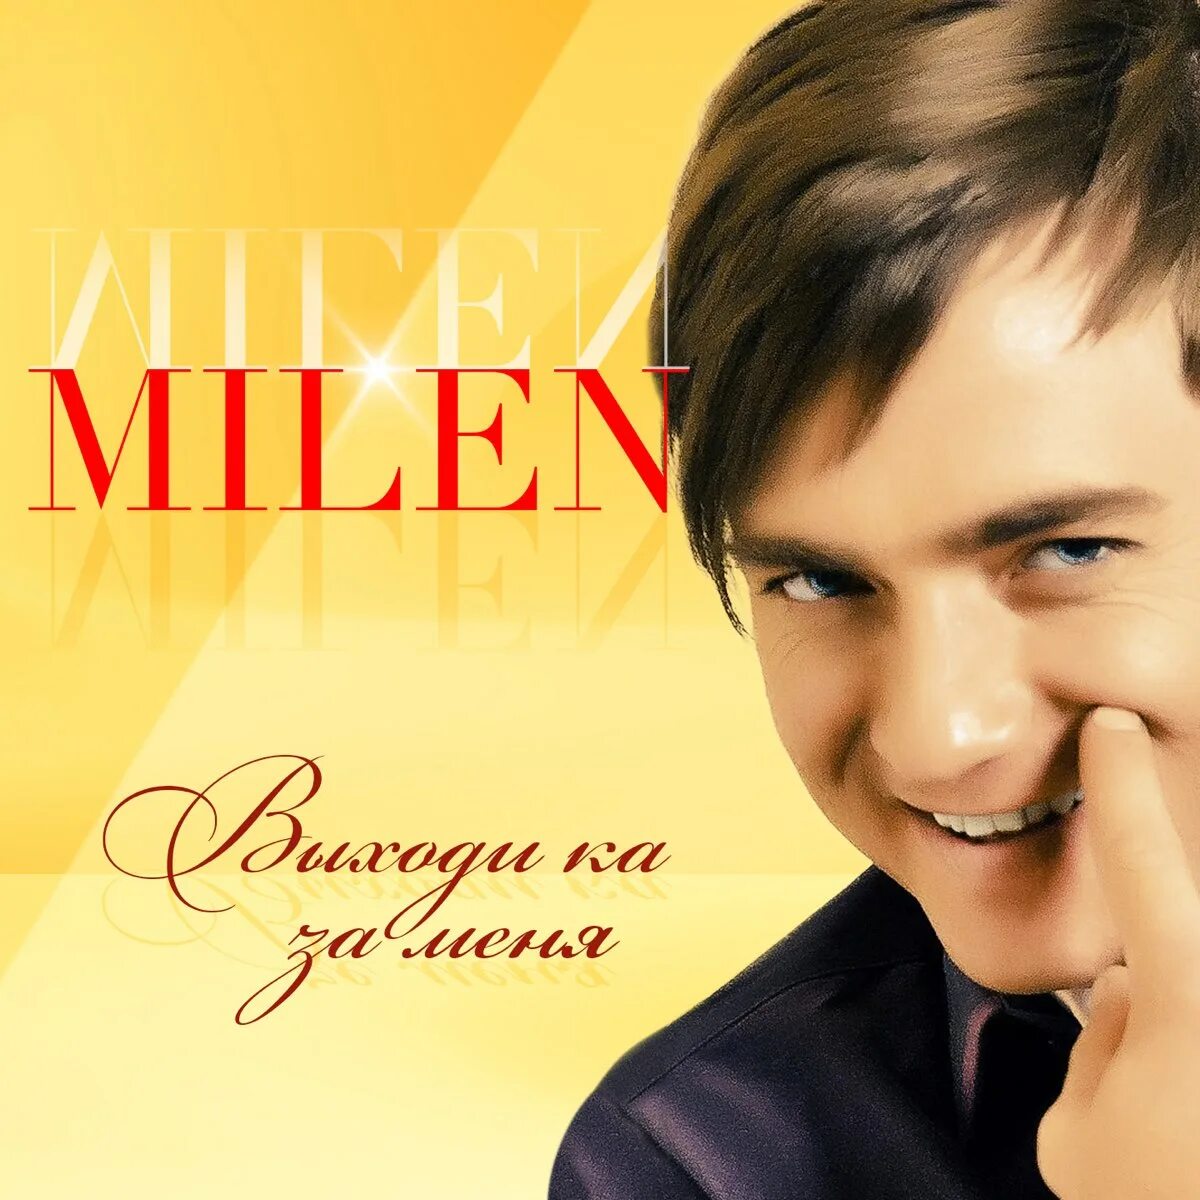 Milen певец.